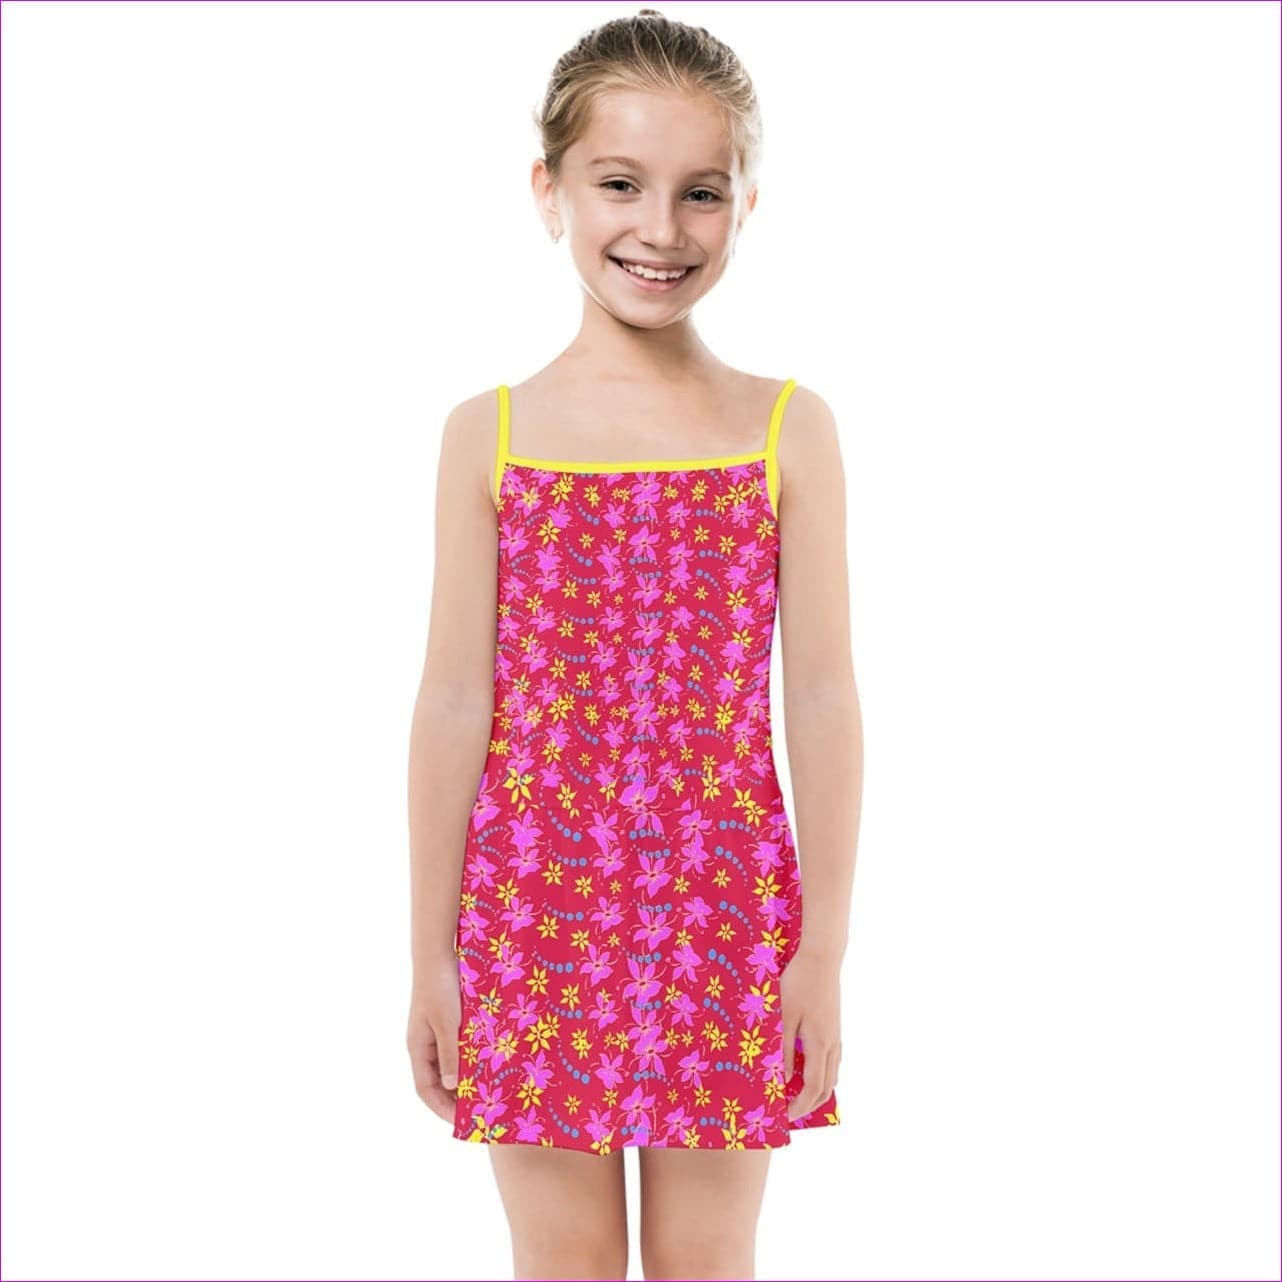 Floral Wear Kids Girls Summer Sun Dress - kid's dress at TFC&H Co.